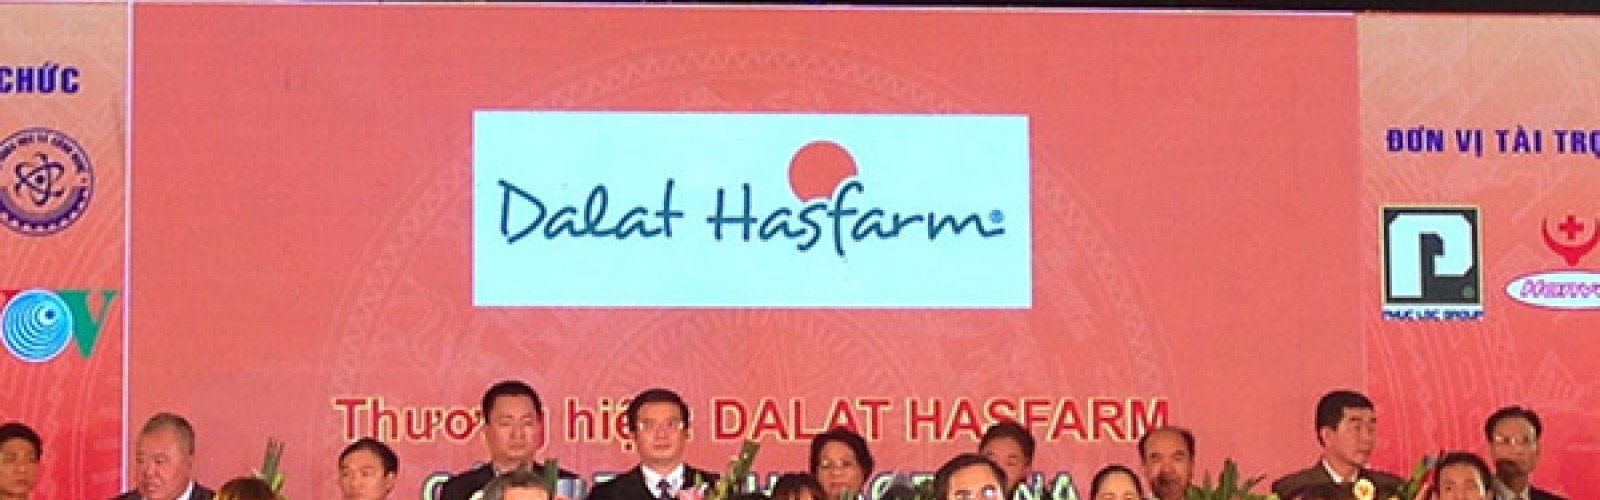 Dalat Hasfarm Vinh Dự Nhận Giải Thưởng “100 thương hiệu bền vững tại Việt Nam” năm 2015